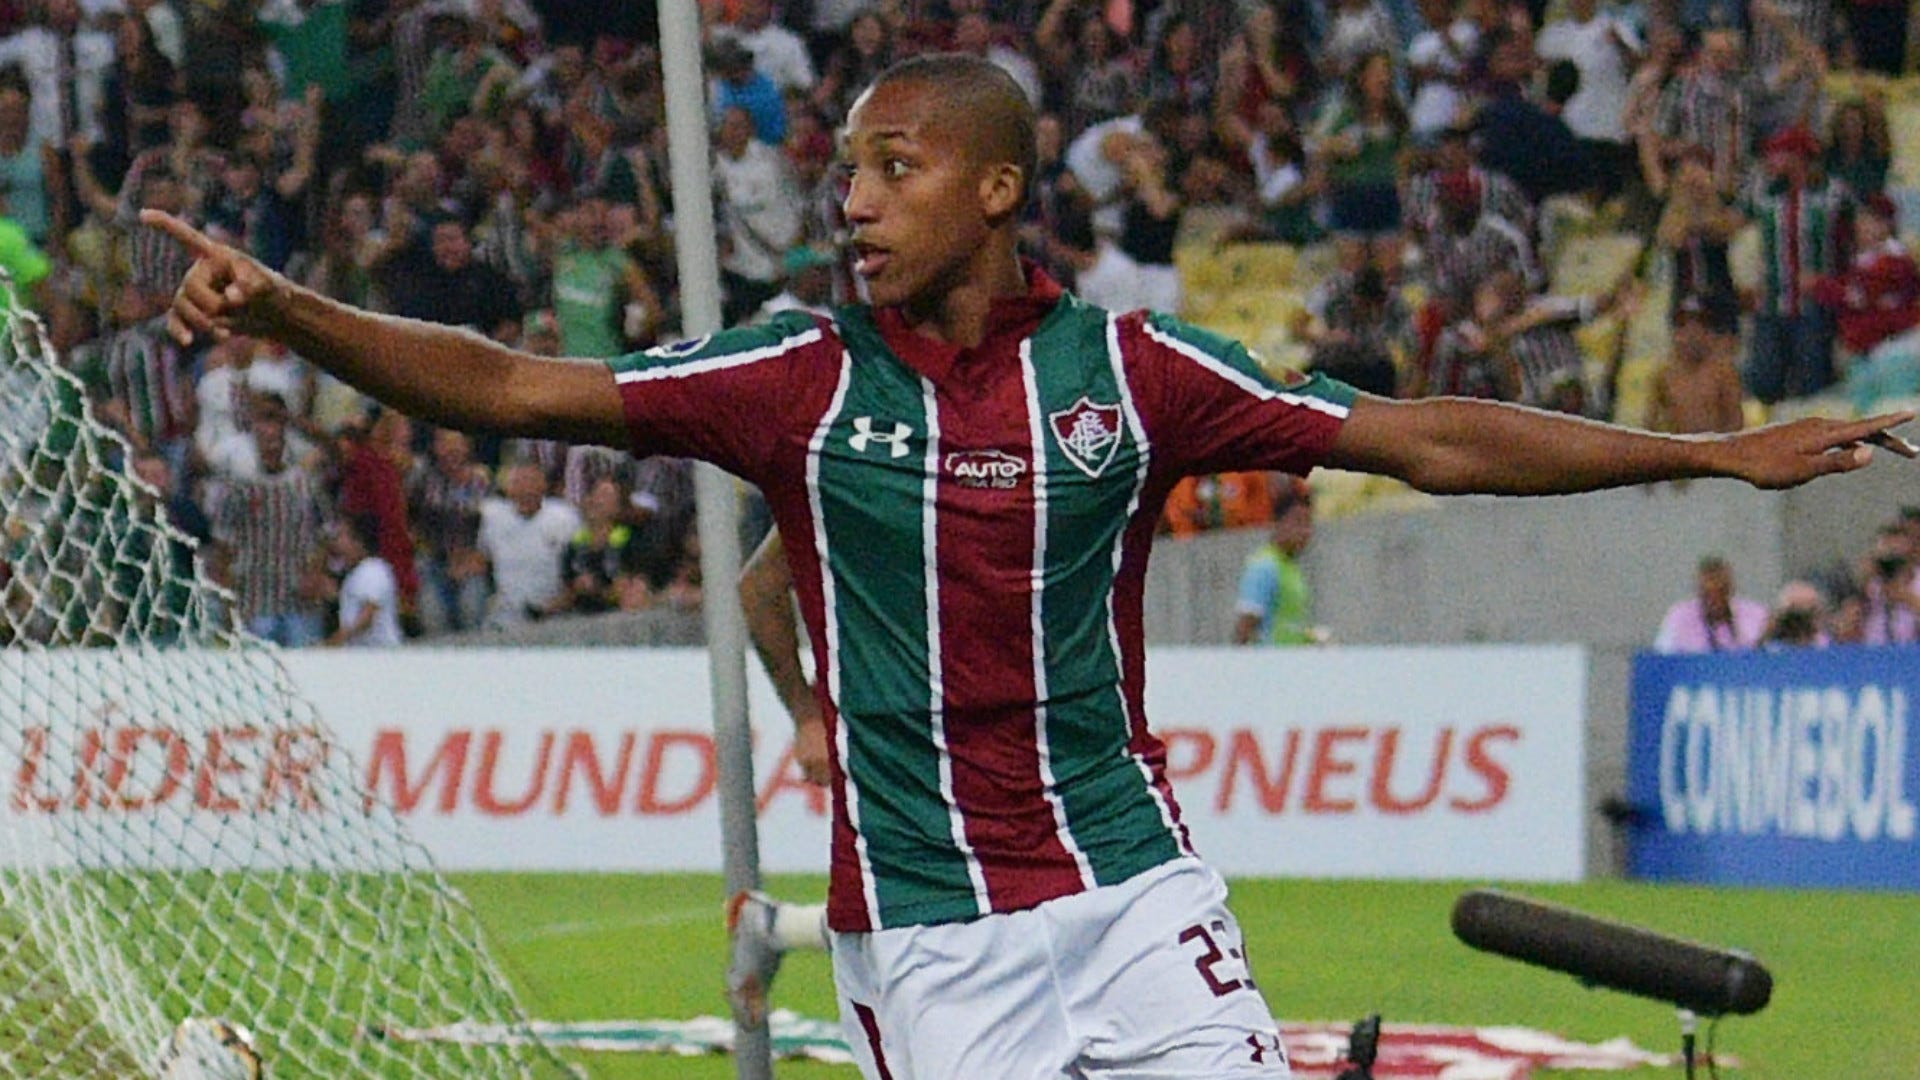 Joao Pedro Fluminense 2019